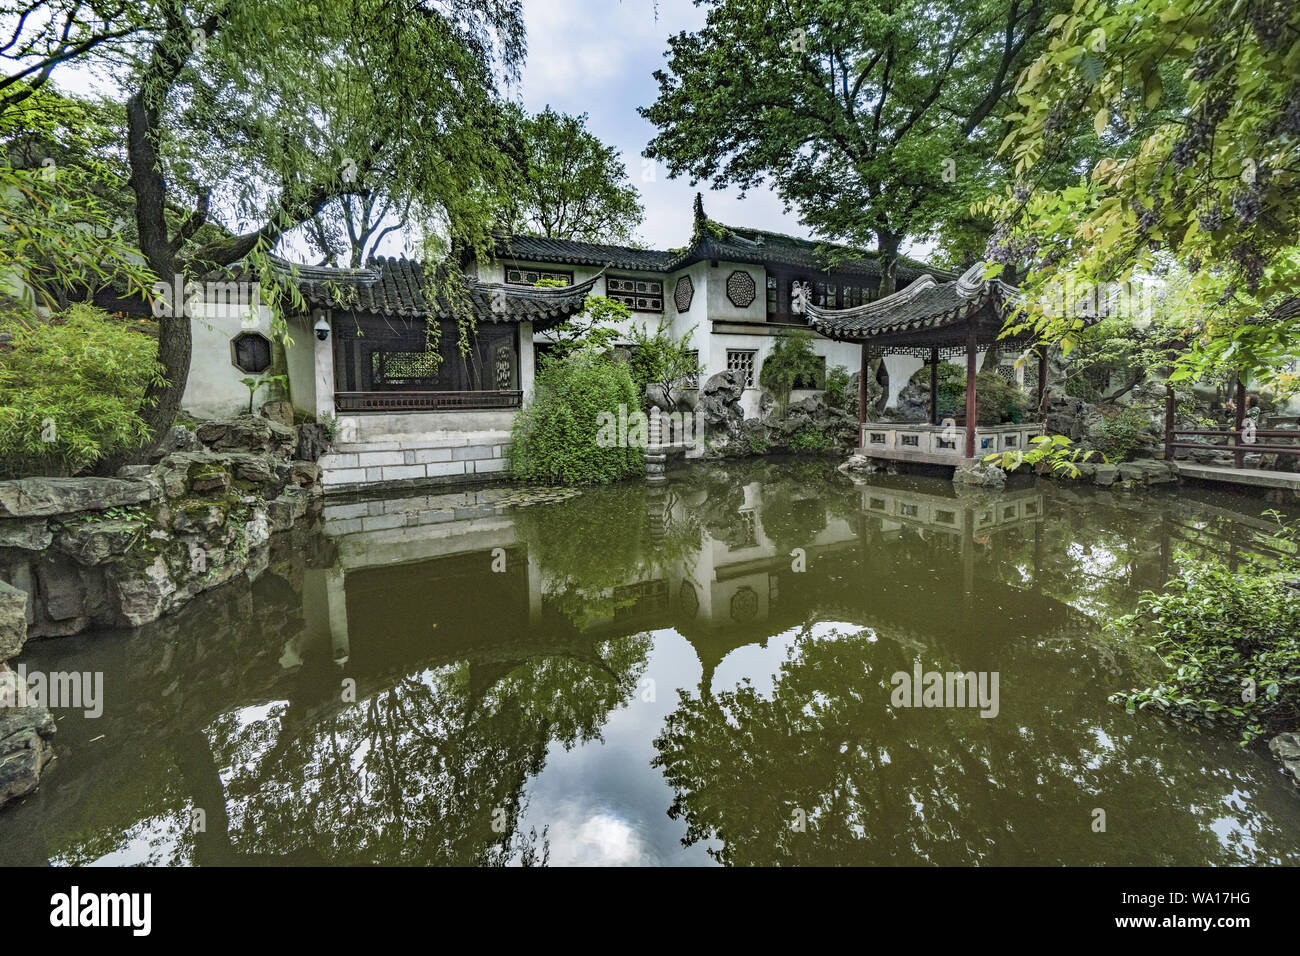 Suzhou gardens - garden - 3 Stock Photo